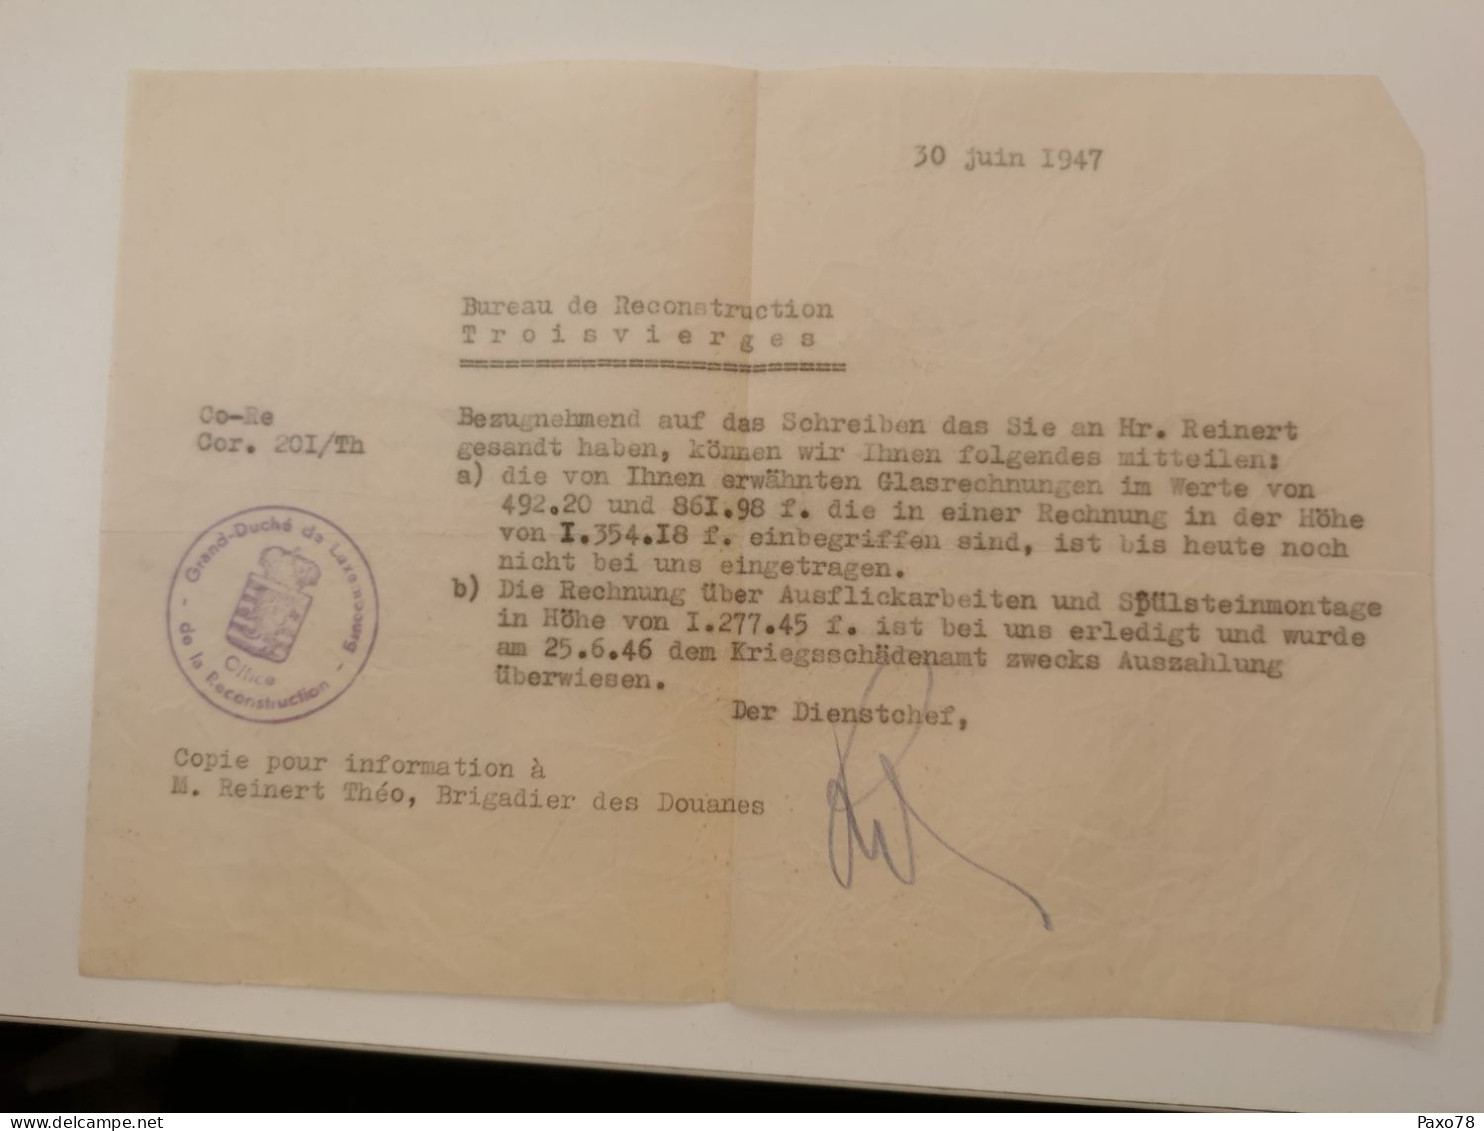 Lettre, Bureau De Reconstruction Troisvierges 1947 - 1940-1944 German Occupation